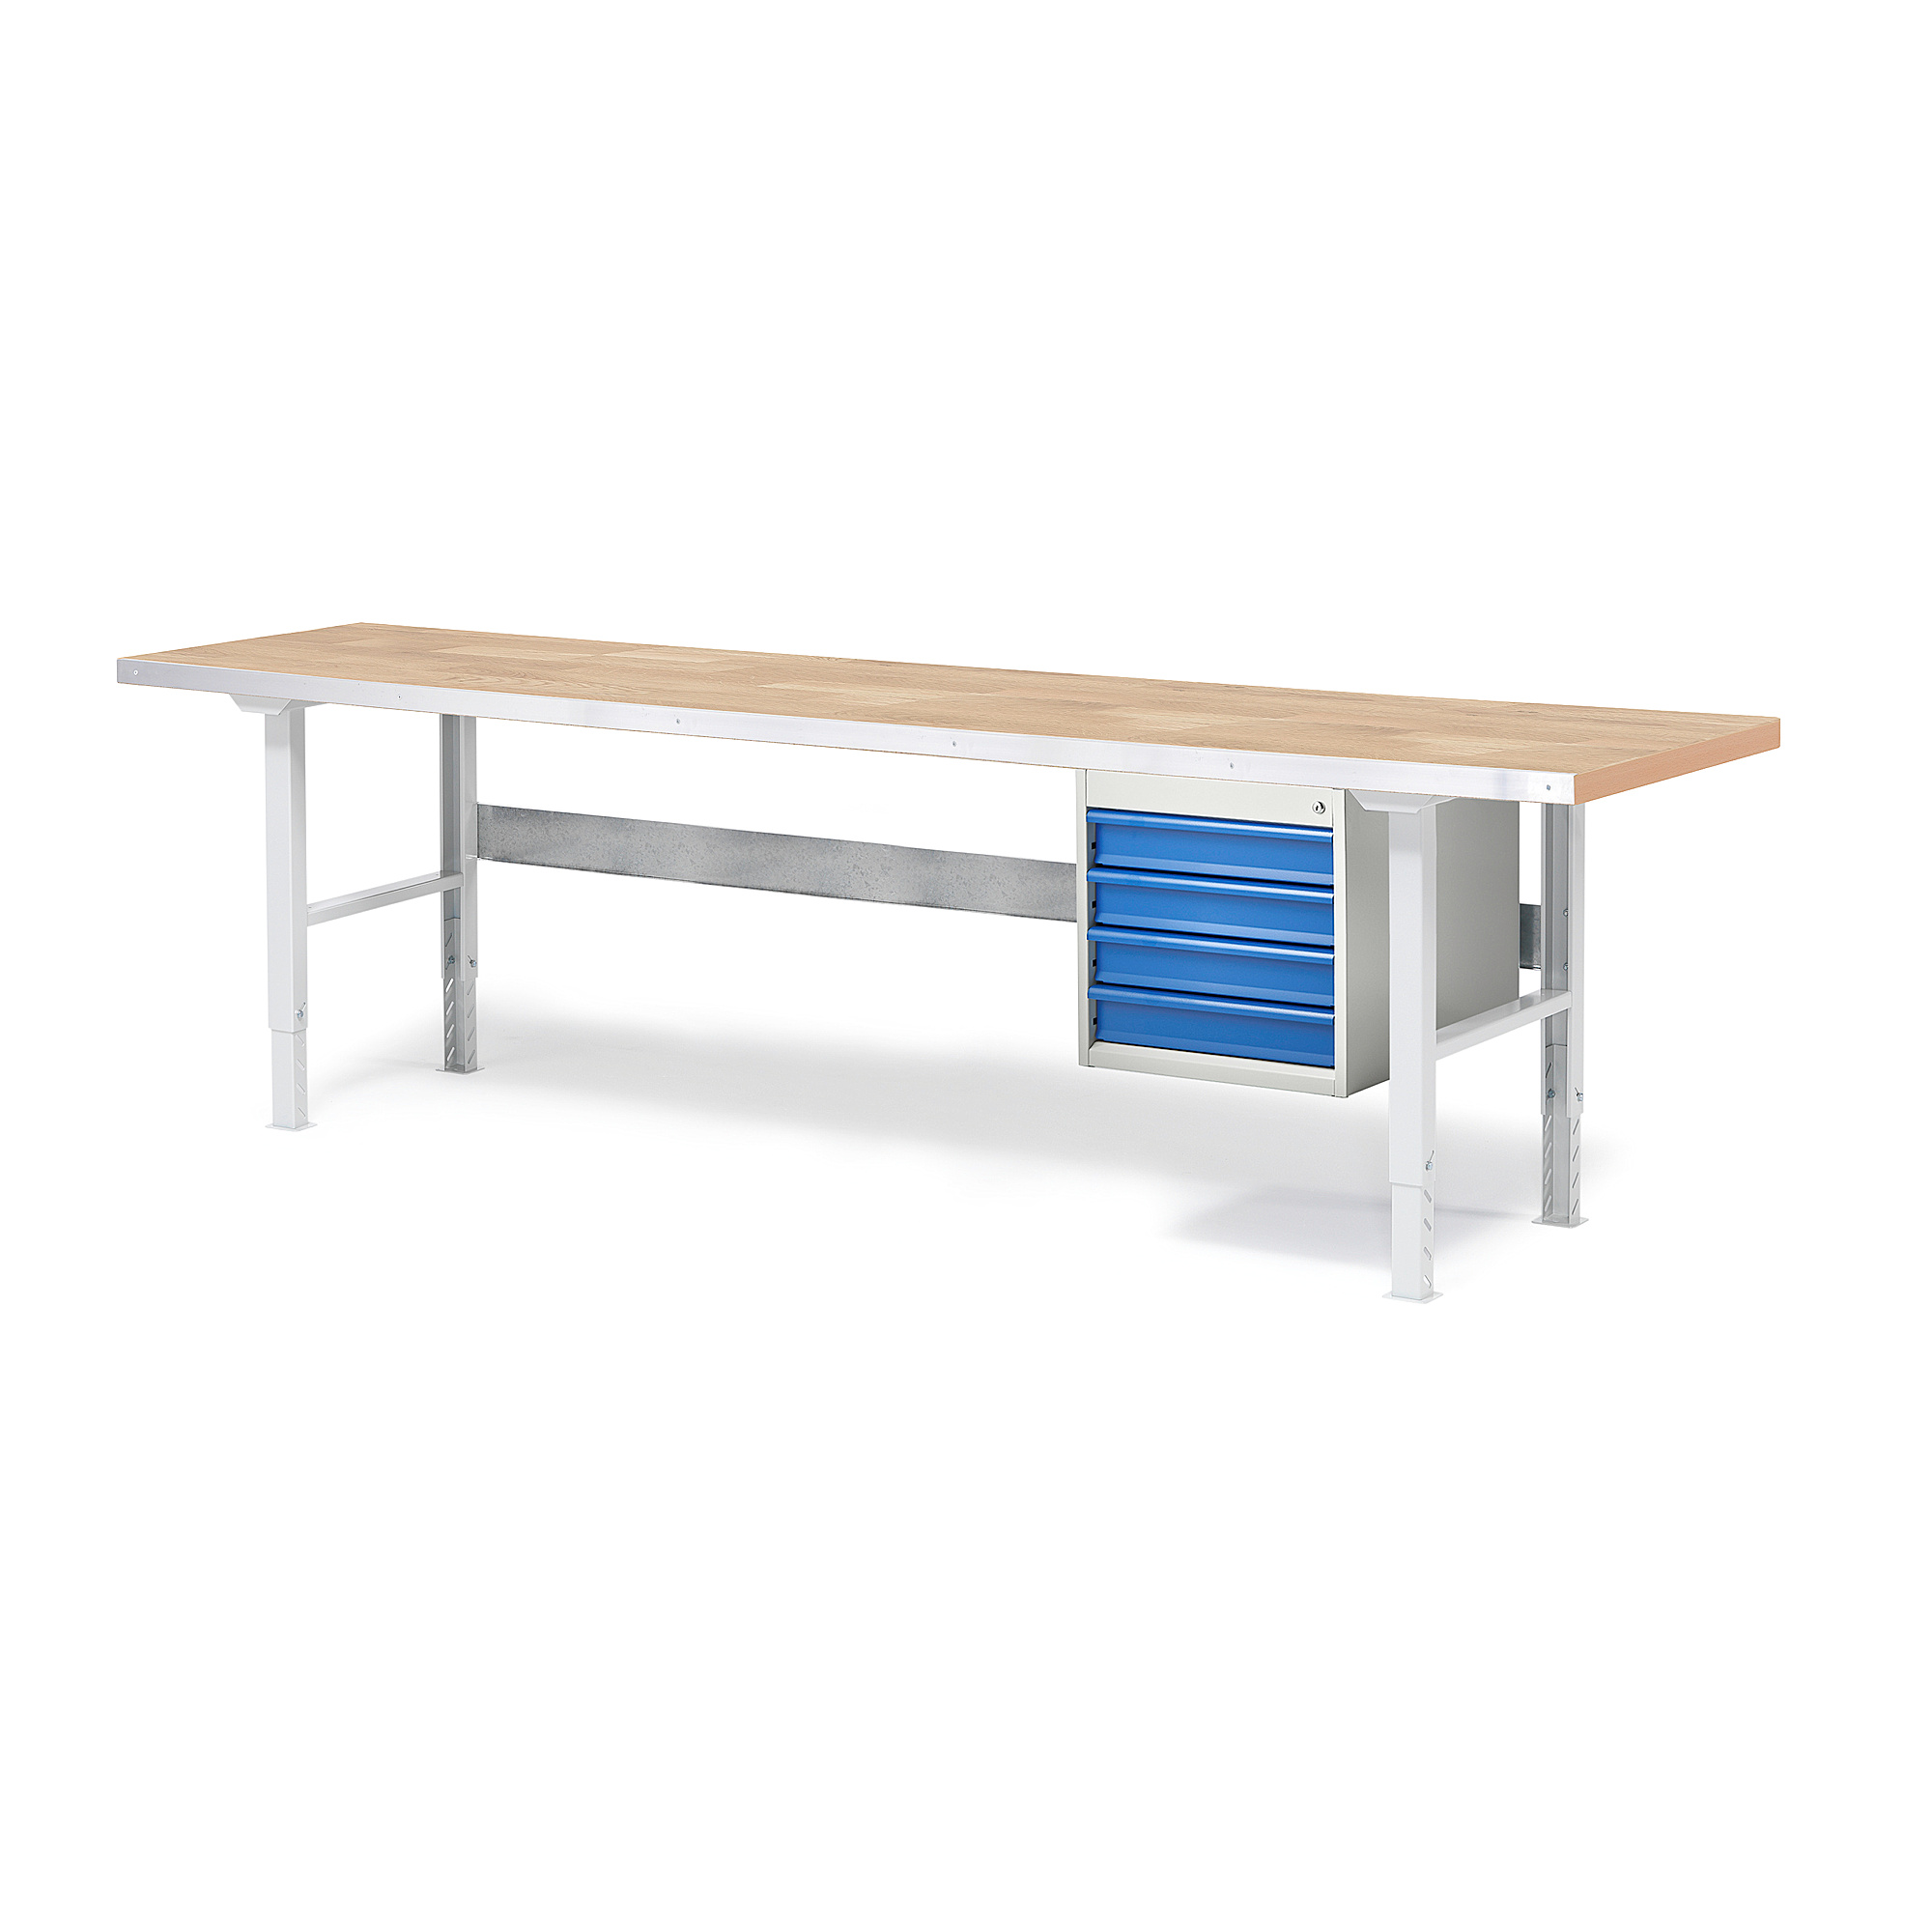 Dílenský stůl SOLID, 2500x800 mm, nosnost 750 kg, 4 zásuvky, dubový povrch